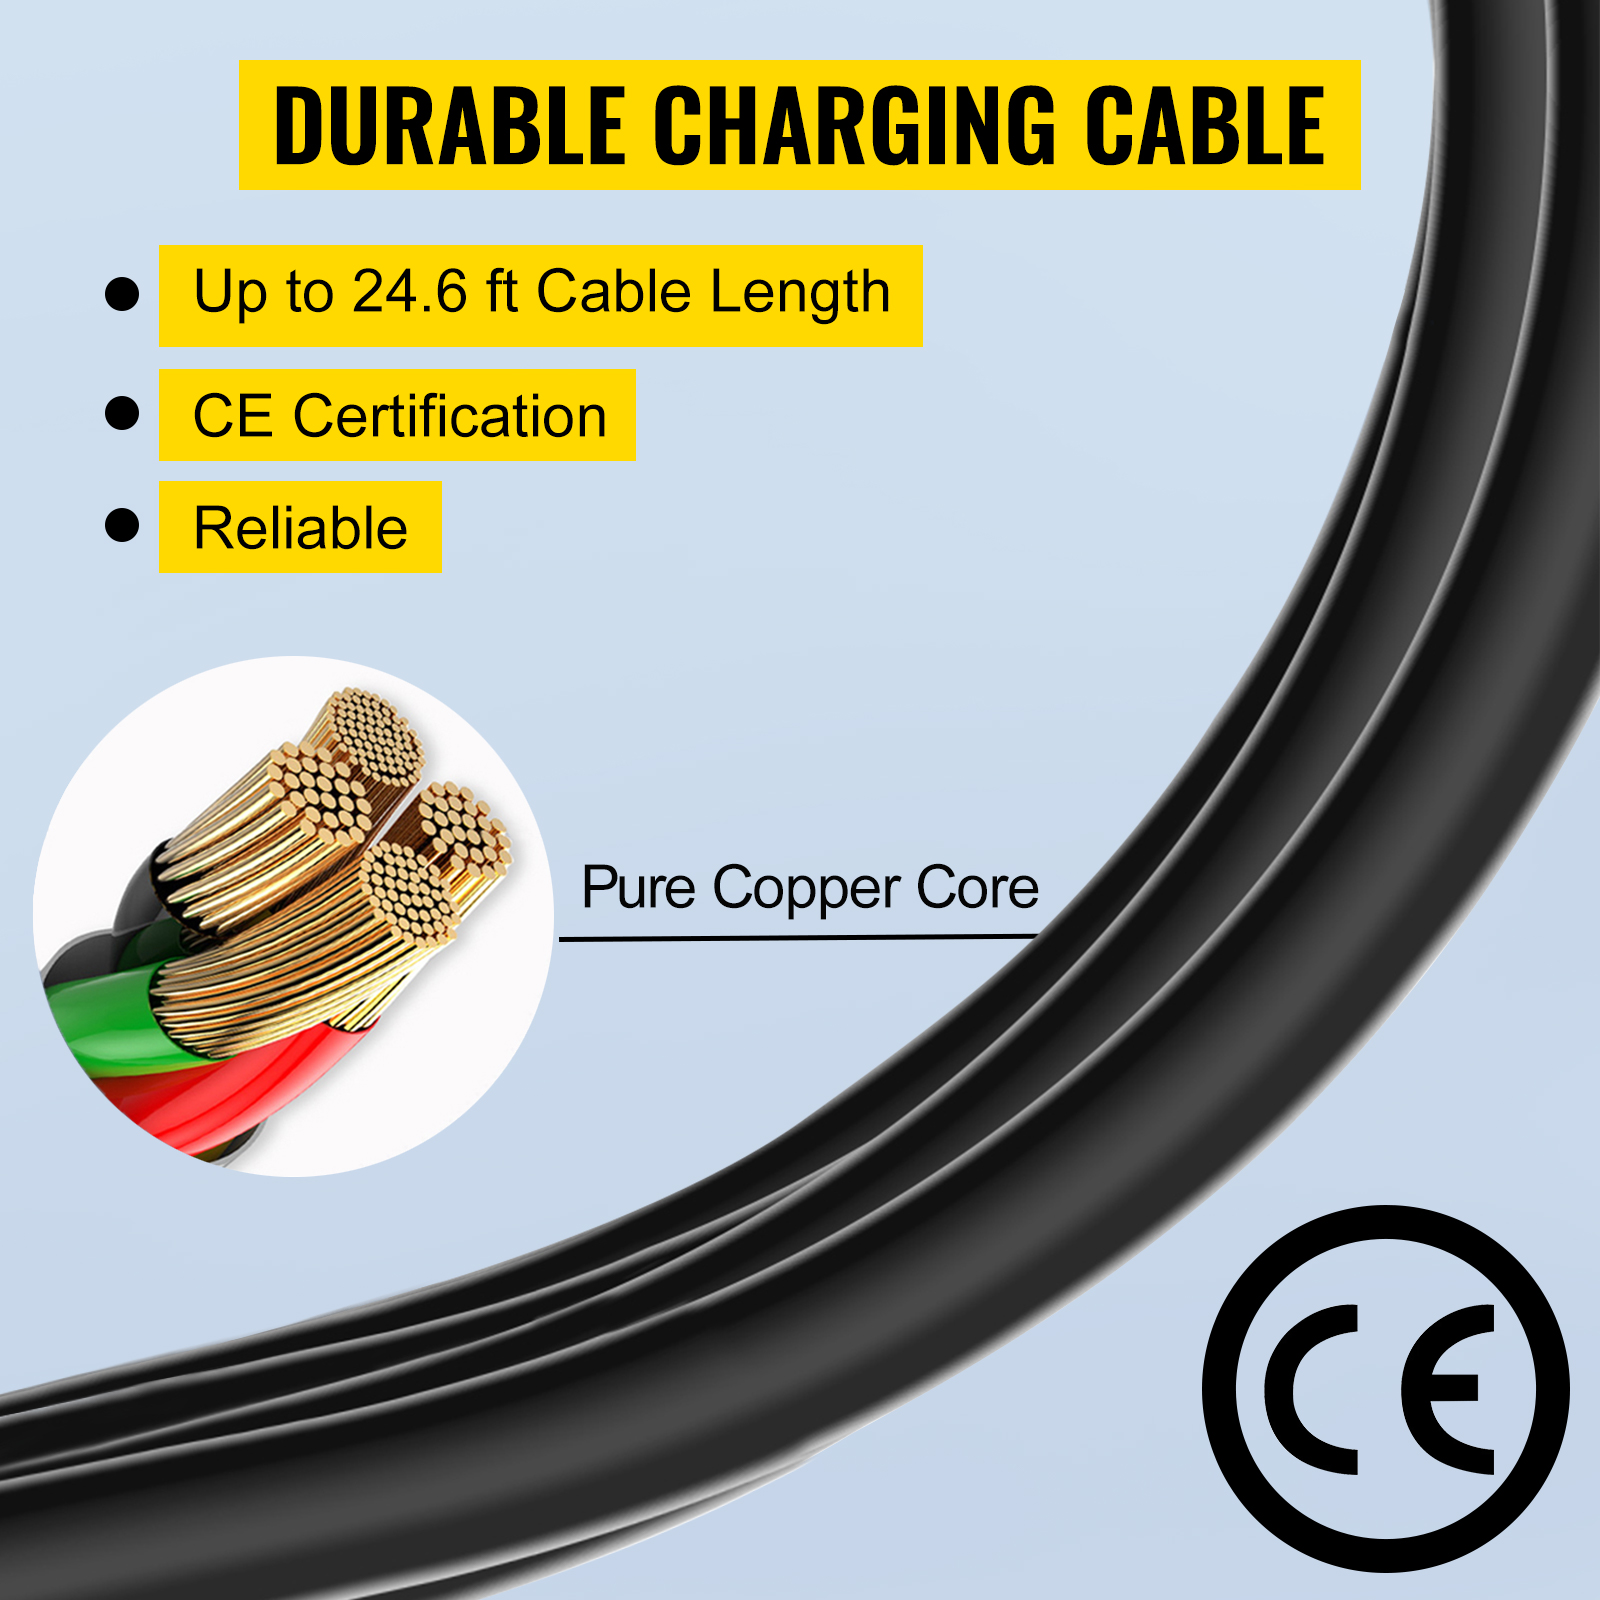 Зарядний кабель для електромобілів VEVOR 16 A для стандарту ЄС, 7,5 м зарядна станція для електромобіля з 2-контактним штекером Schuko, 3,6 кВт електромобіль, 250 В IP54 з'єднання з цифровим РК-екраном та сертифікат CE